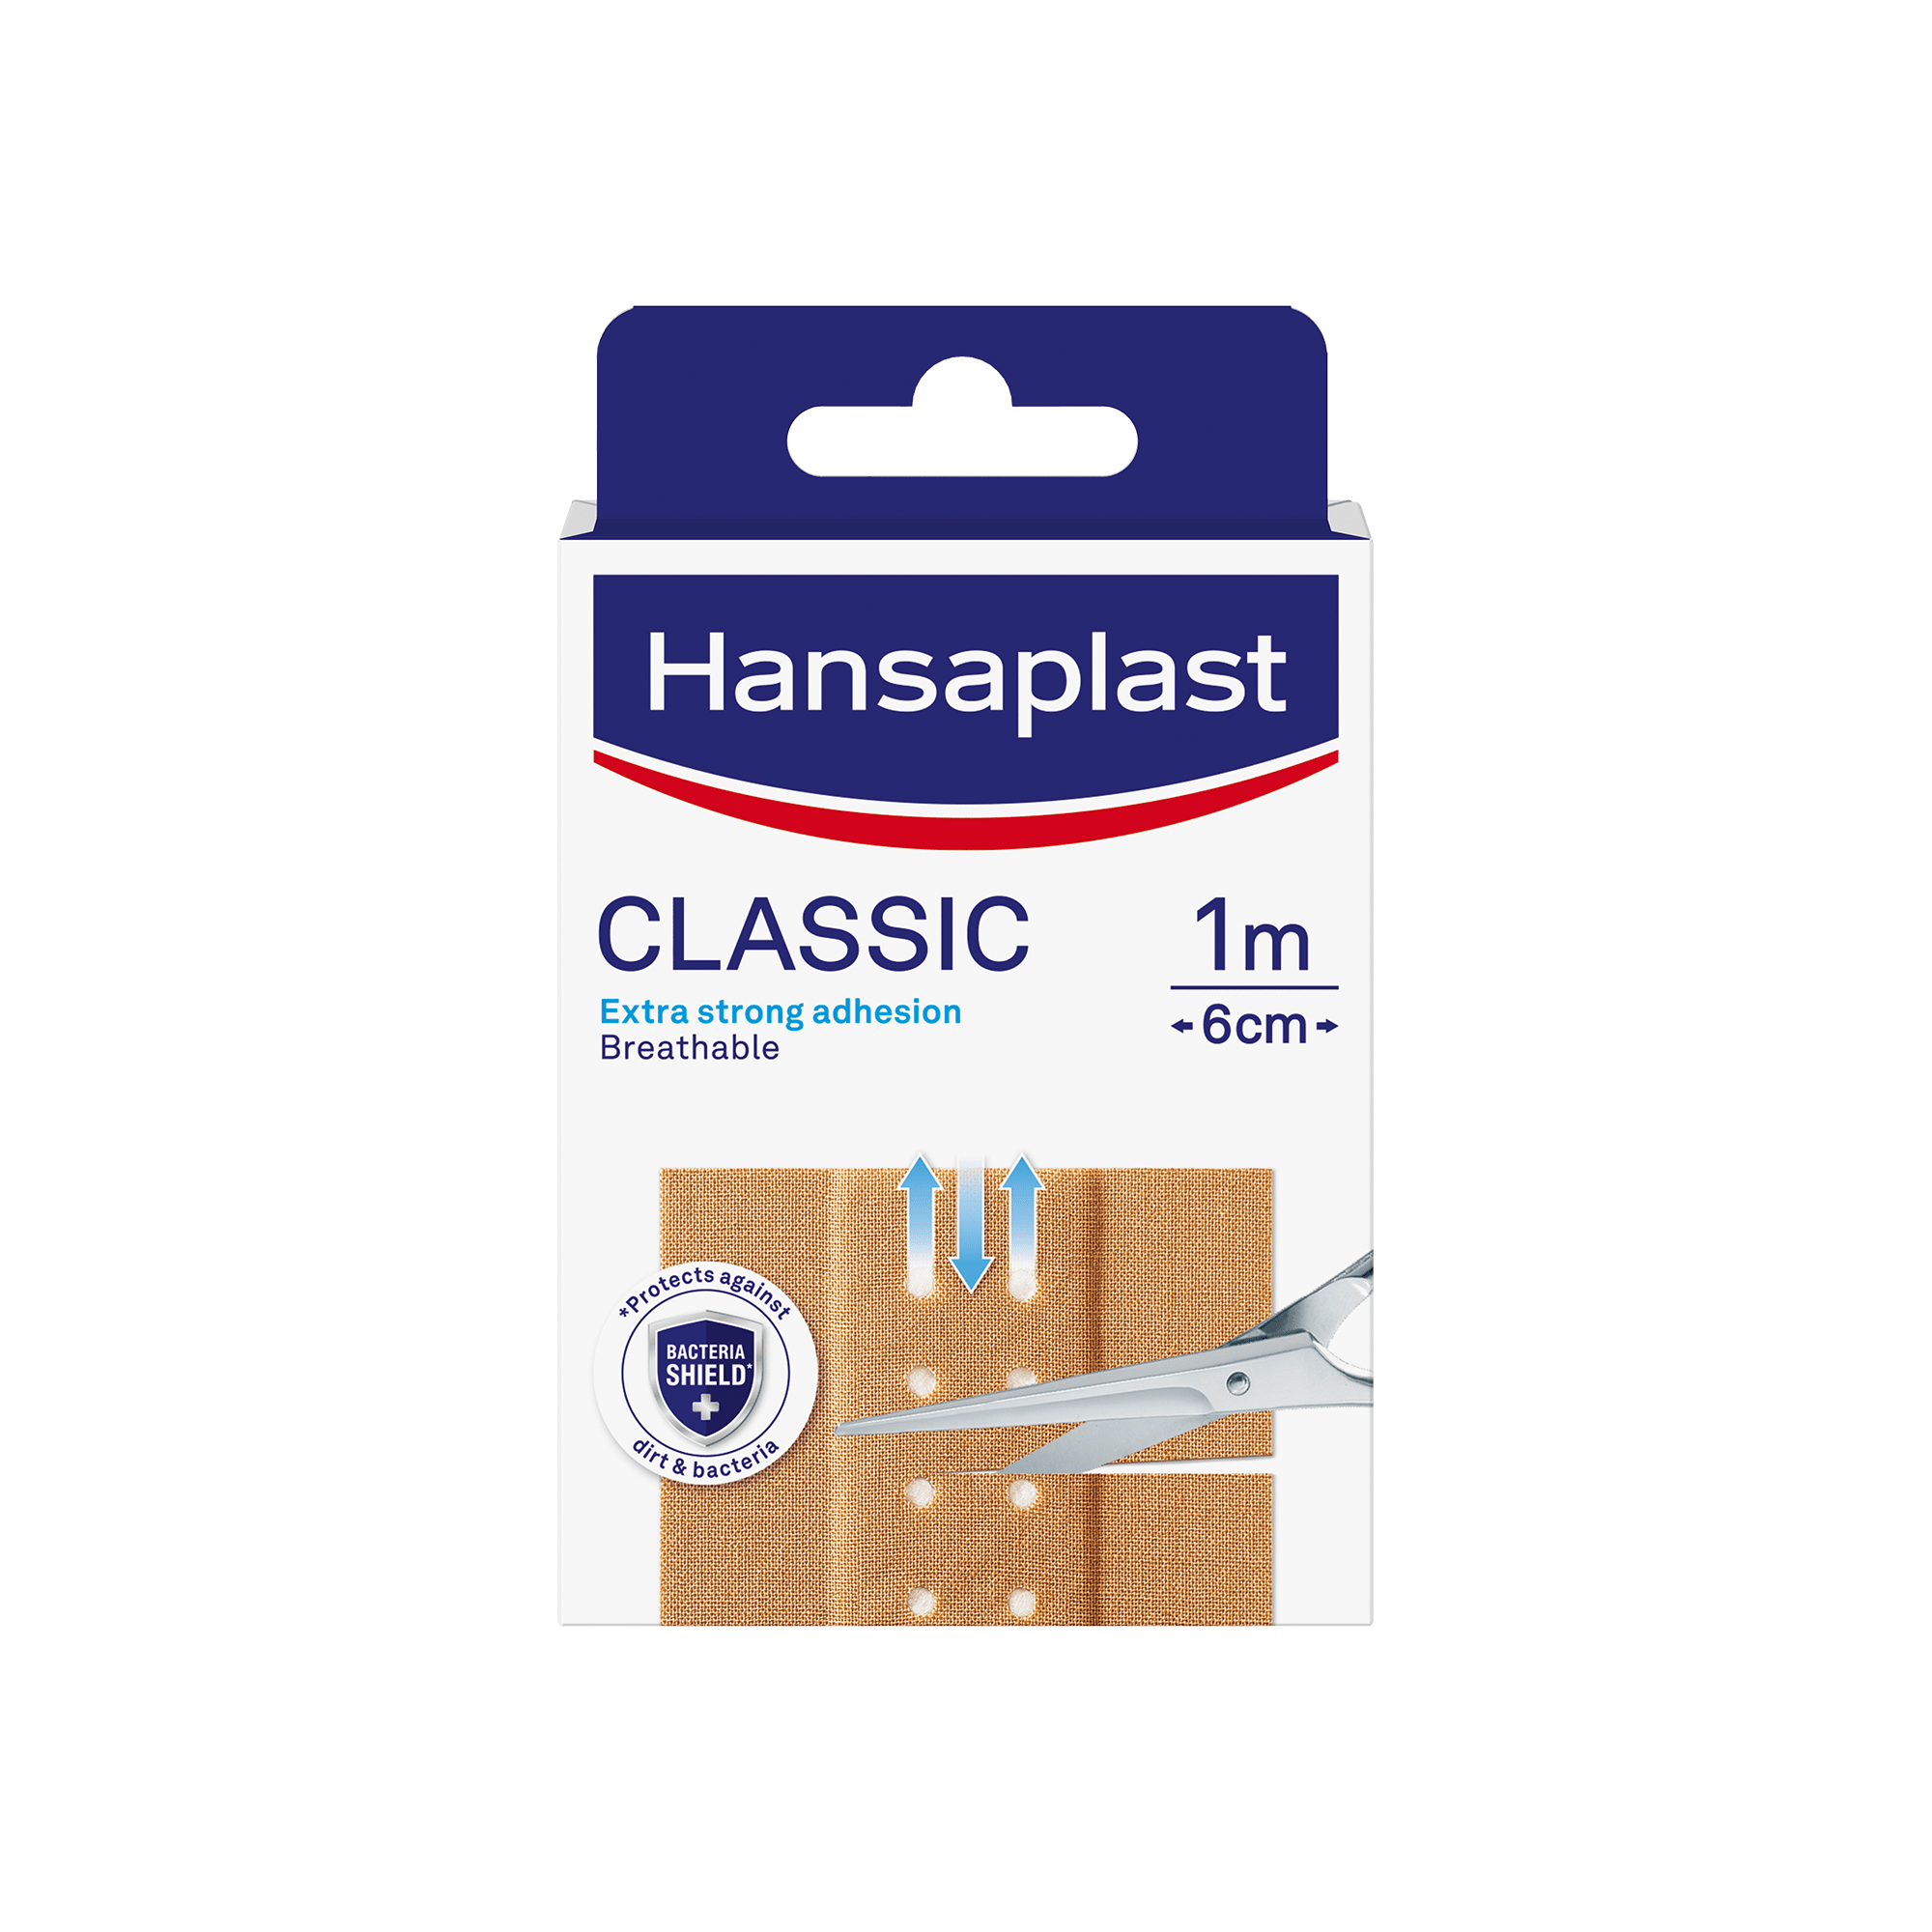 Hansaplast classic flaster